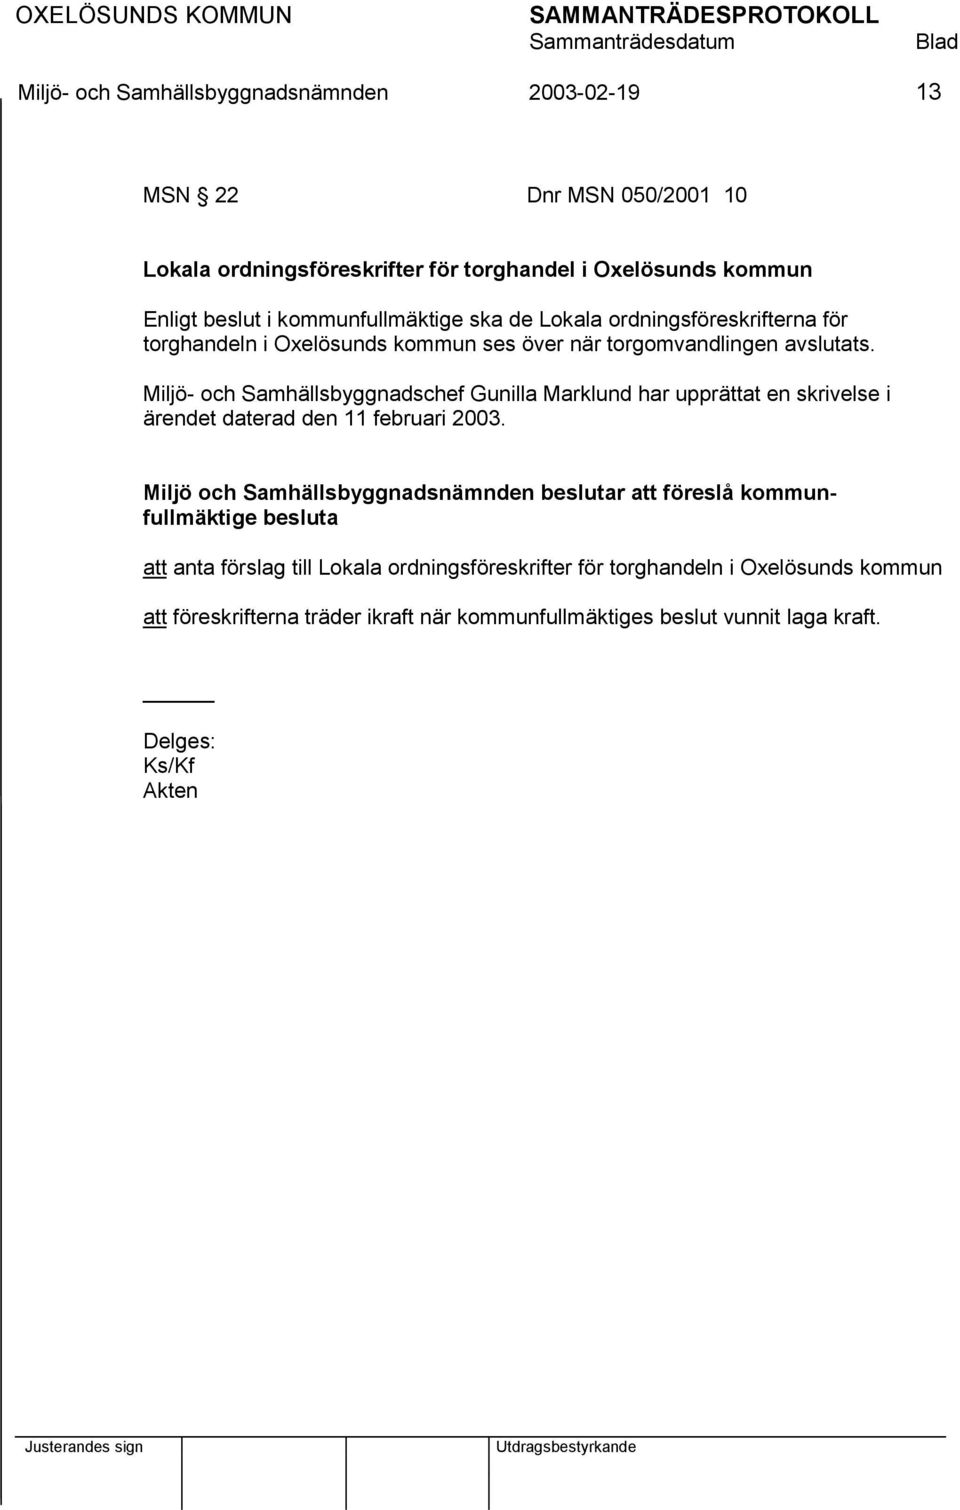 Miljö- och Samhällsbyggnadschef Gunilla Marklund har upprättat en skrivelse i ärendet daterad den 11 februari 2003.